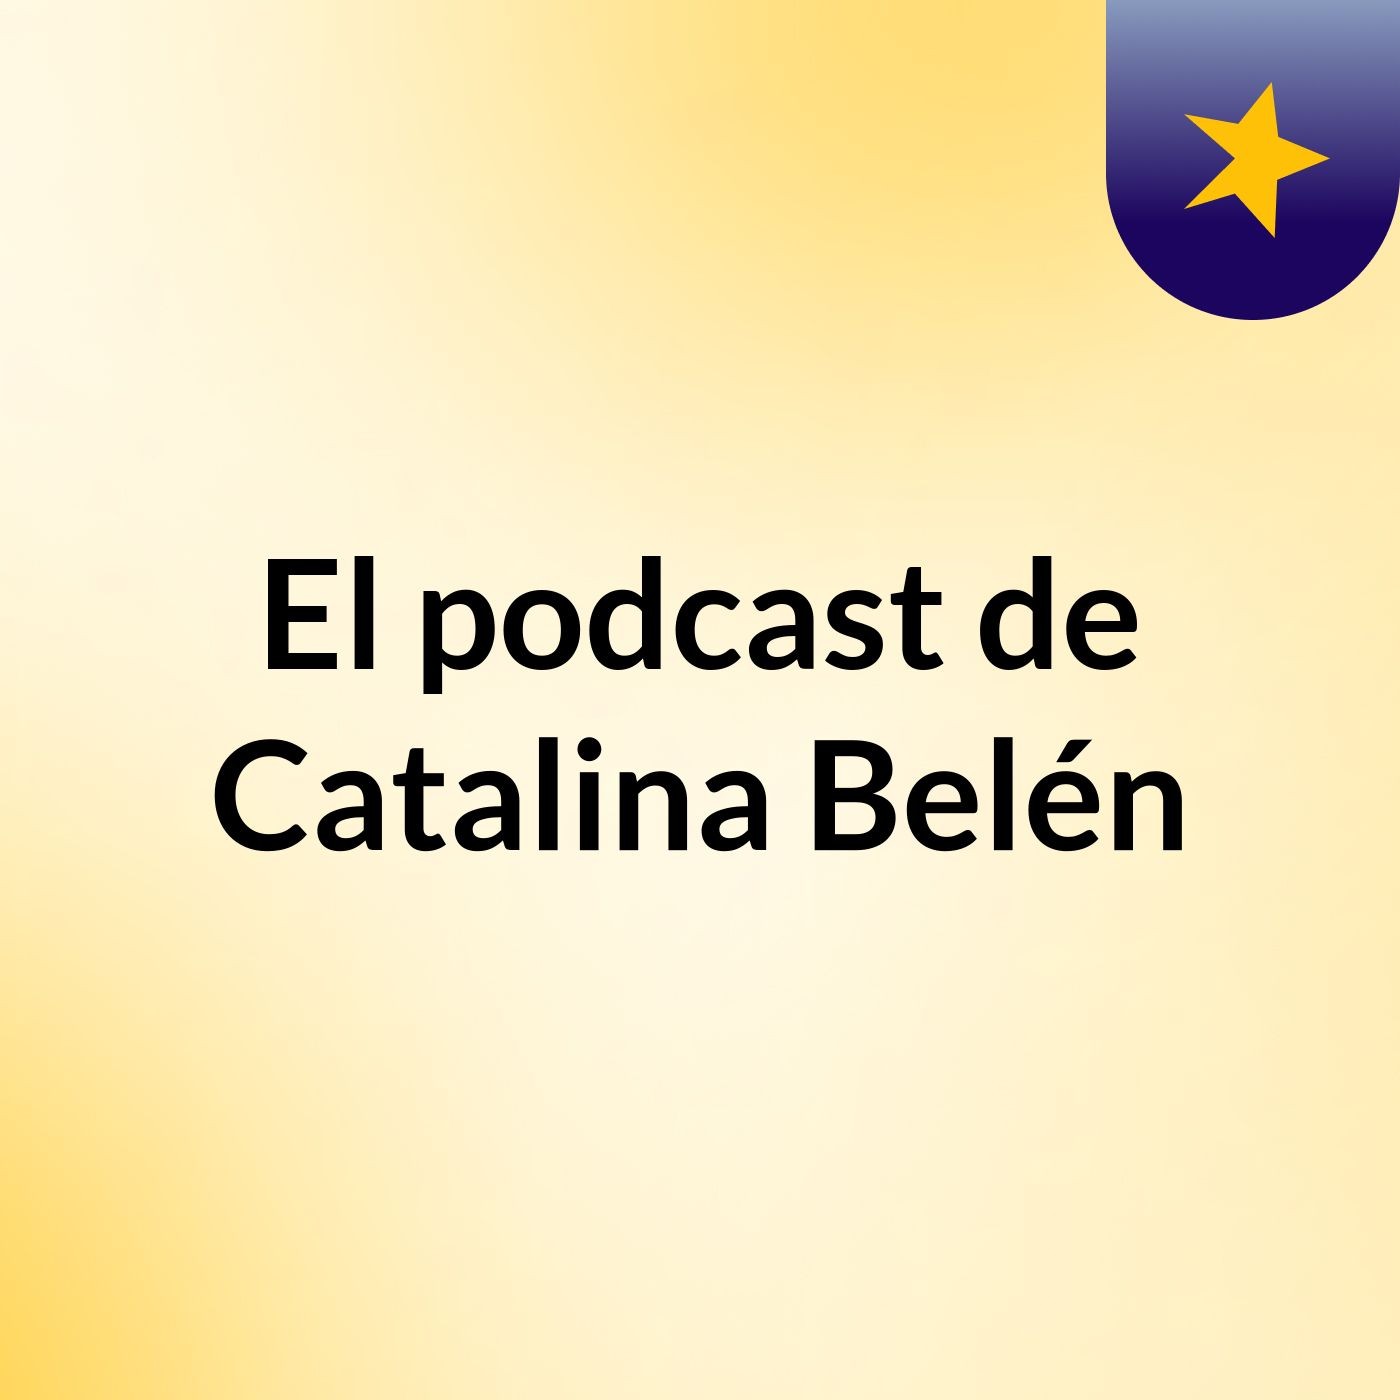 Episodio 25 - El podcast de Catalina Belén